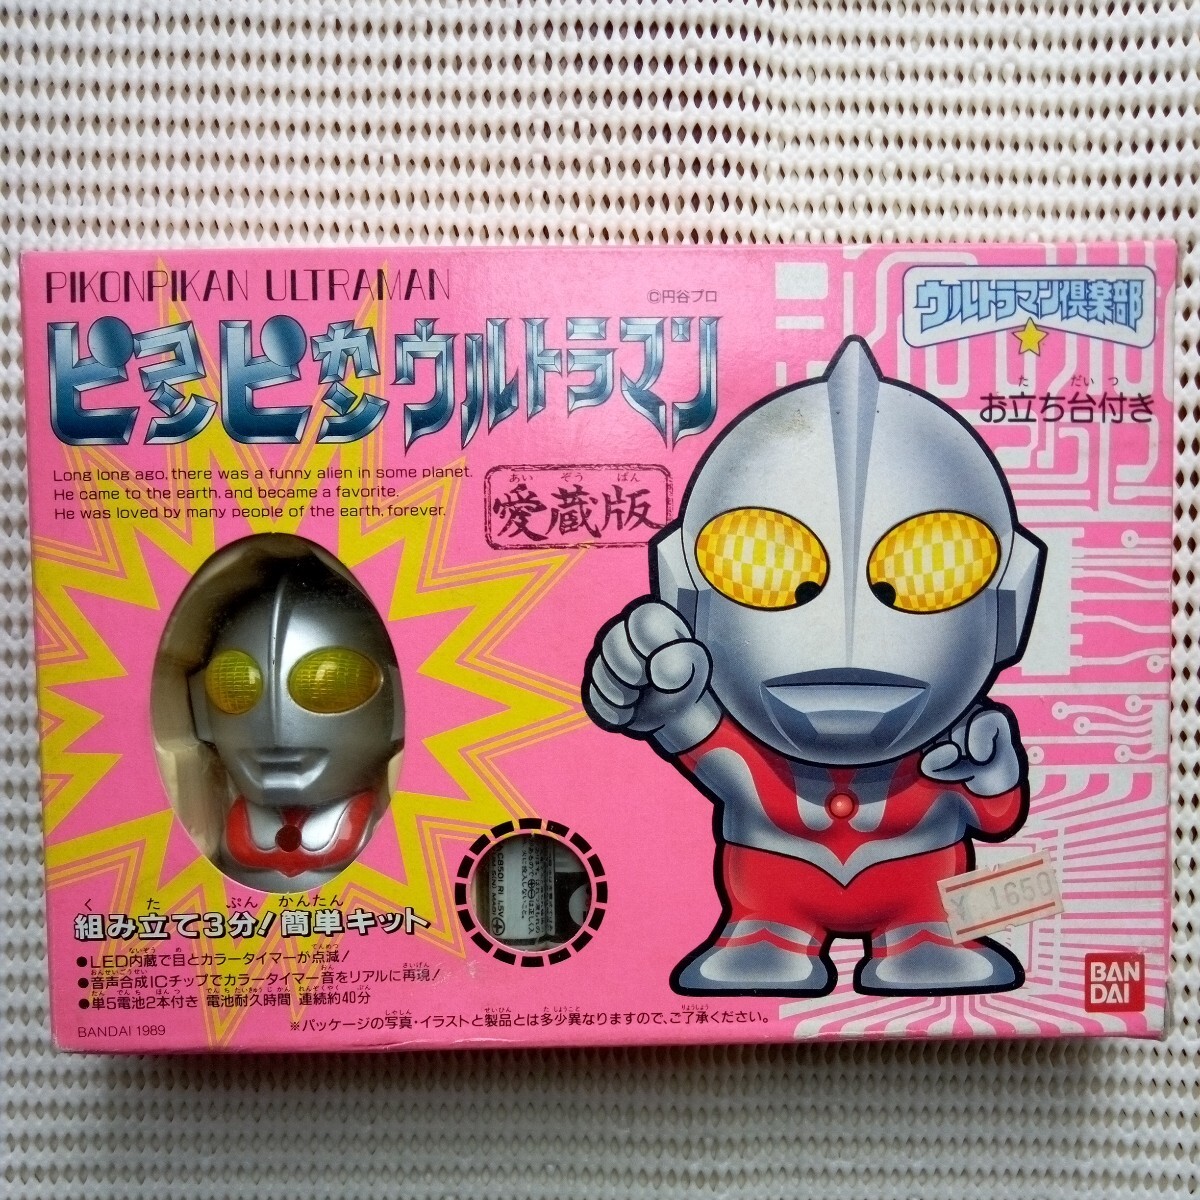  подлинная вещь,pi темно синий pi can Ultraman коллекционное издание *... шт. имеется,(LED внутренности ., глаз . цвет таймер . светится ) Ultraman клуб, Vintage, retro 